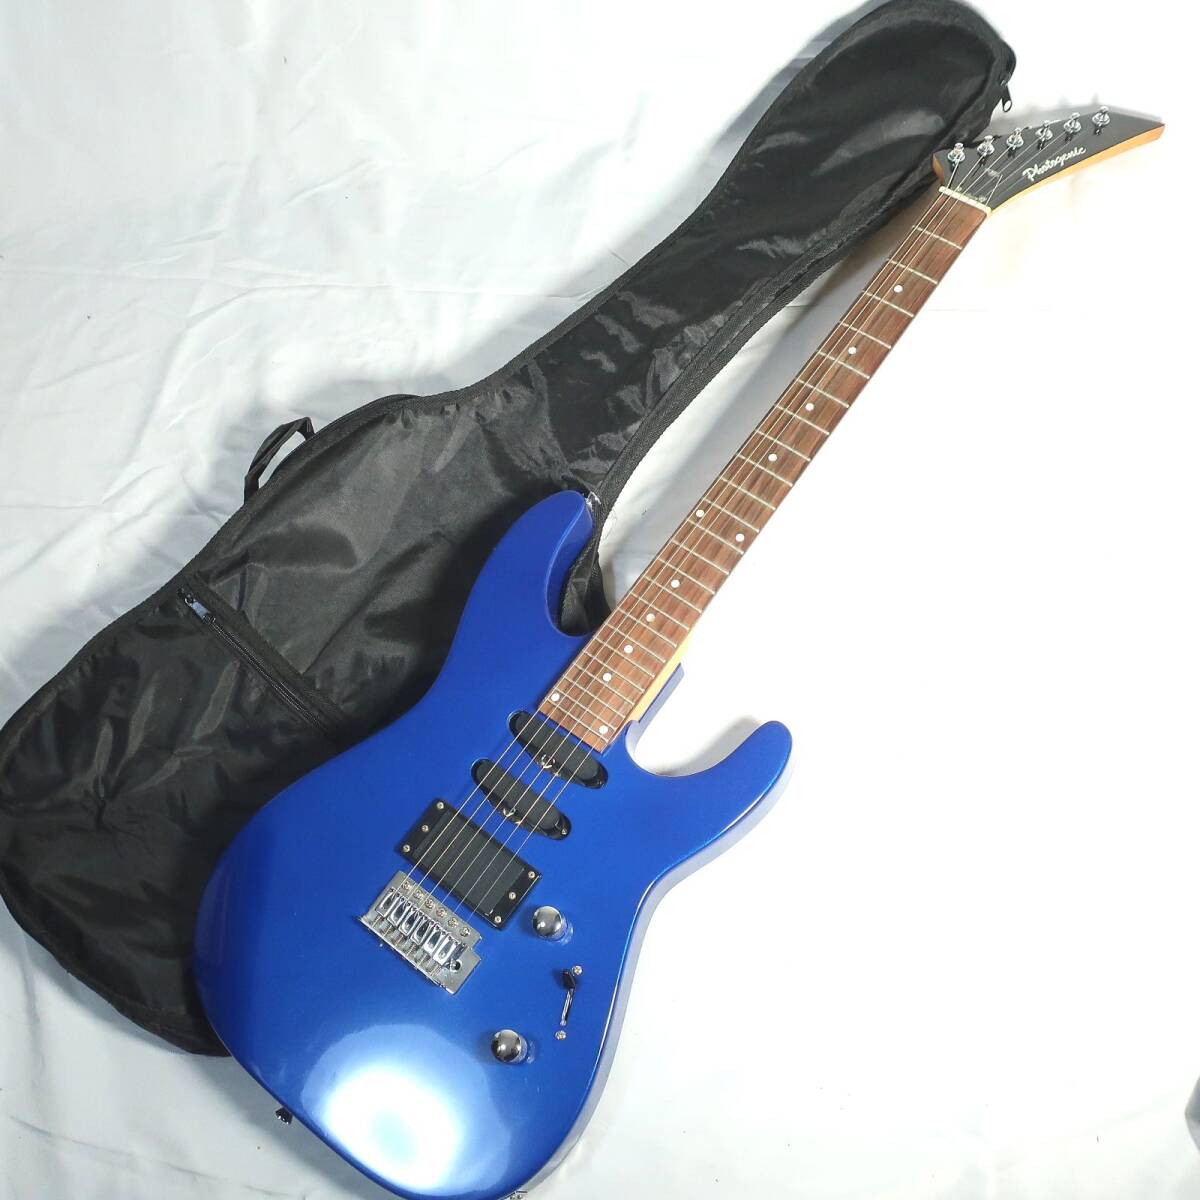 Photogenic コンコルドヘッド メタリックブルー 24フレット SSH エレキギター ケース付き 楽器/160サイズ_画像1